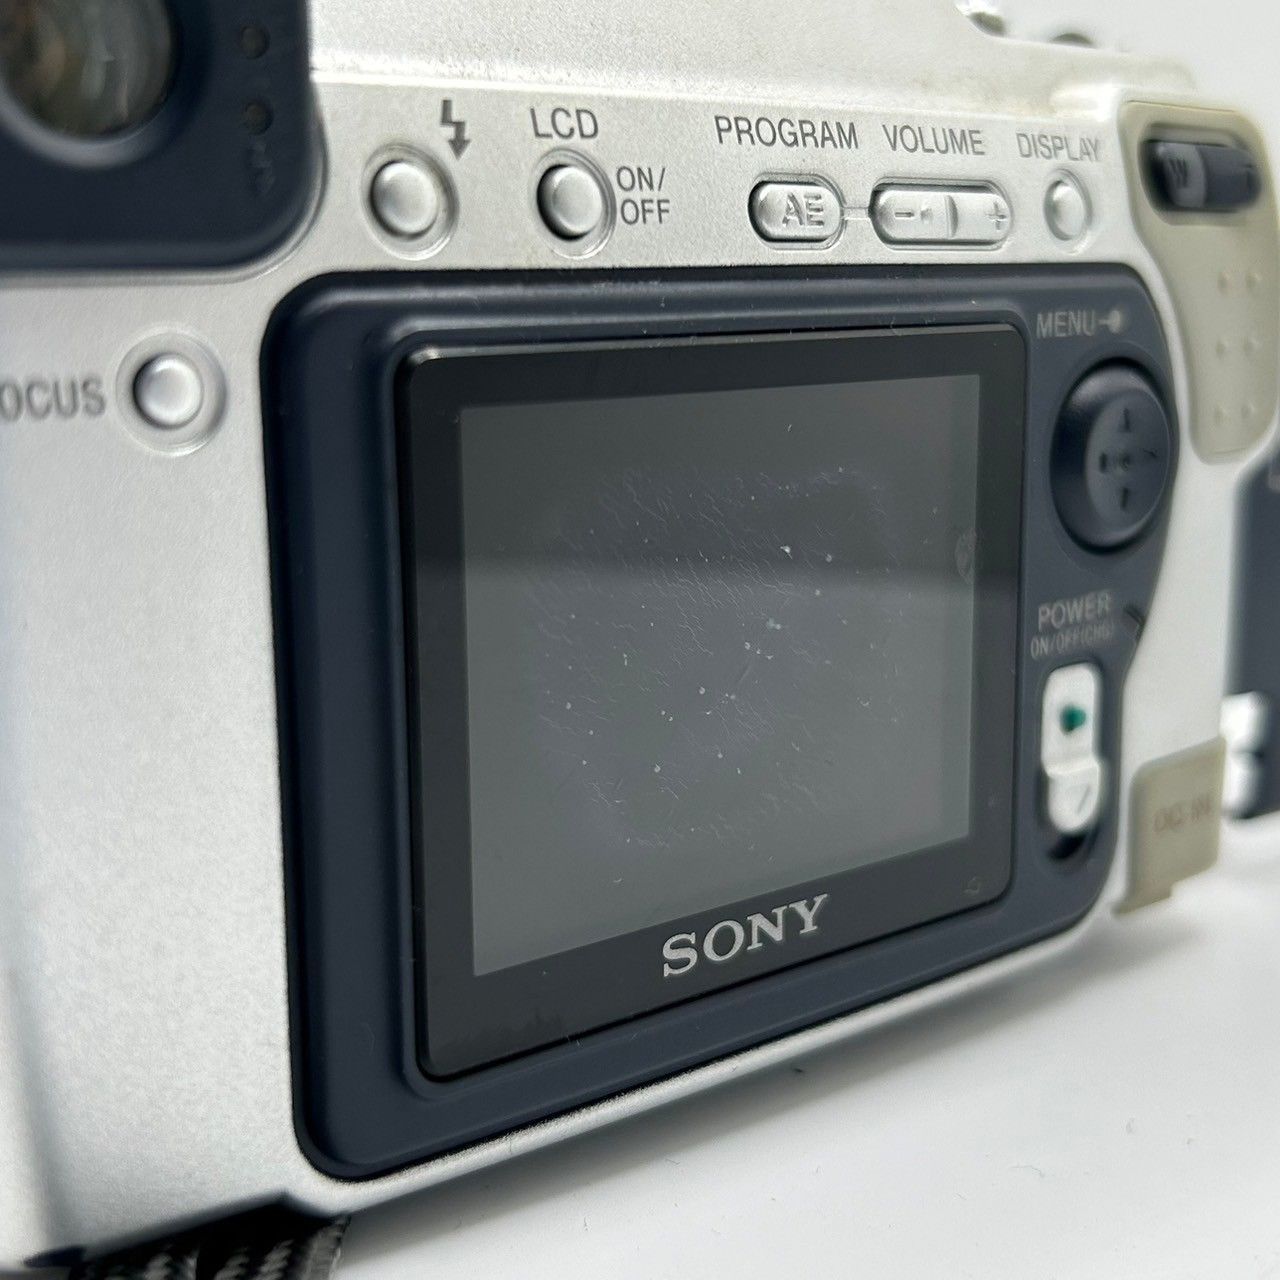 SONY ソニー Cyber shot DSC-S70 6x デジタルカメラ (管理番号 